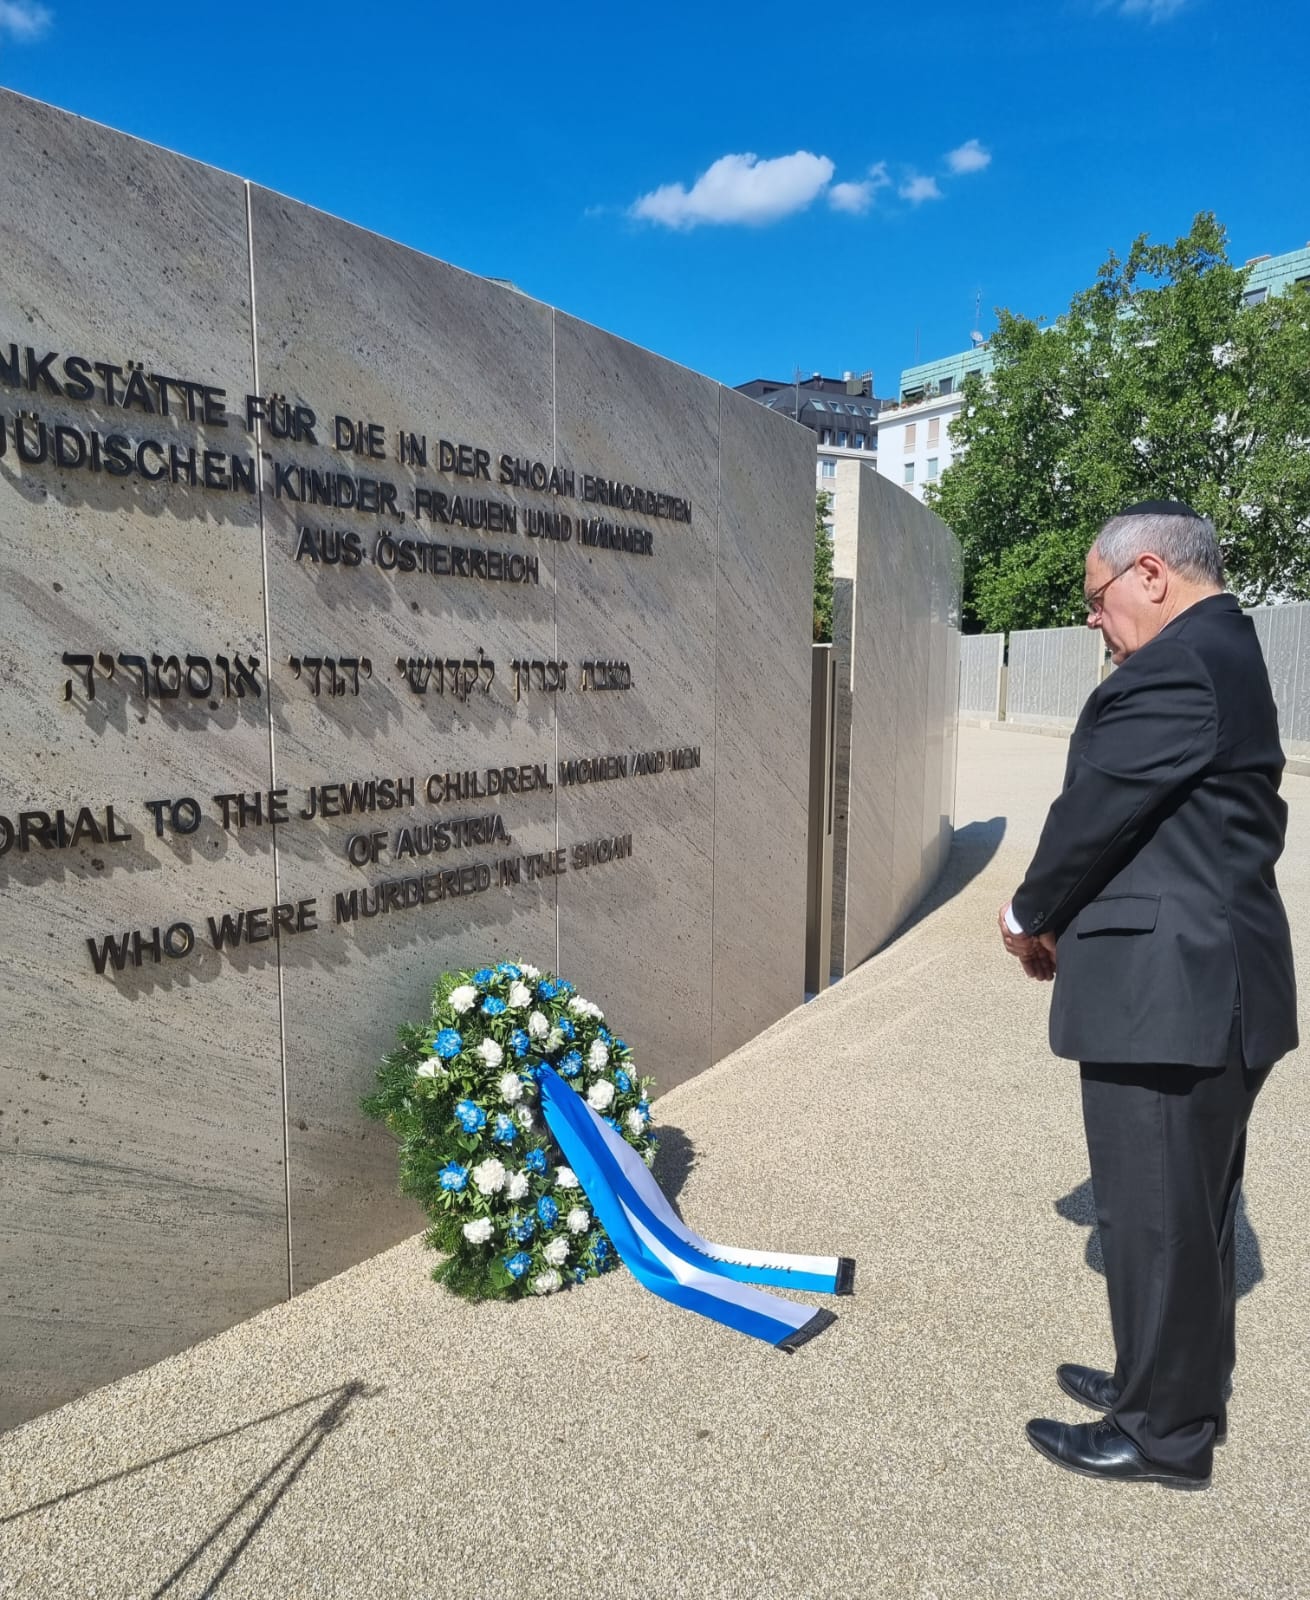 יו"ר יד ושם הניח זר למרגלות האנדרטה להנצחת קורבנות השואה באוסטריה